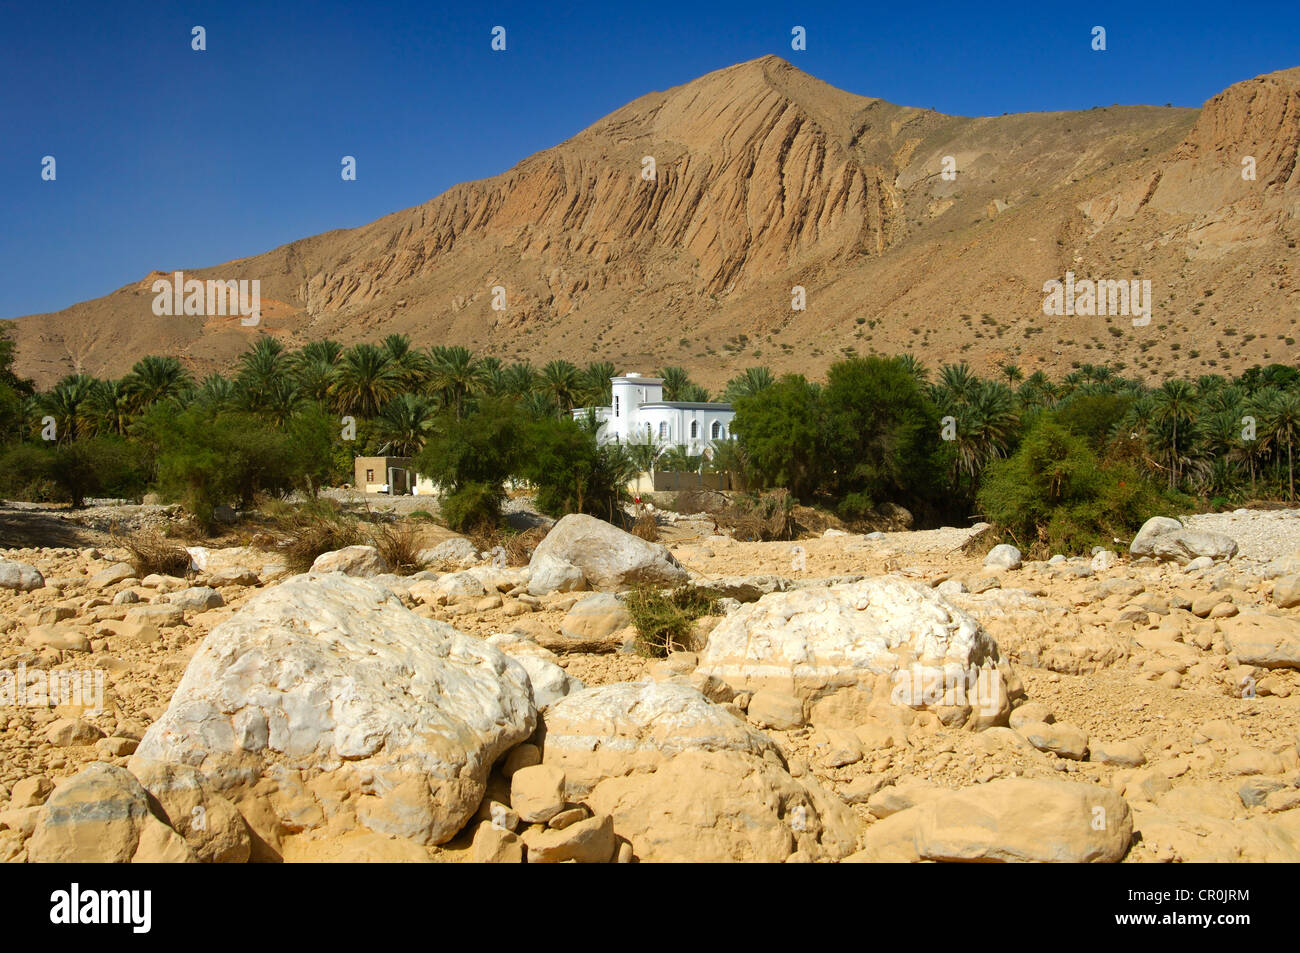 Villa dans une oasis au pied d'une montagne aride à Birkat al Mawz, Sultanat d'Oman, au Moyen-Orient Banque D'Images